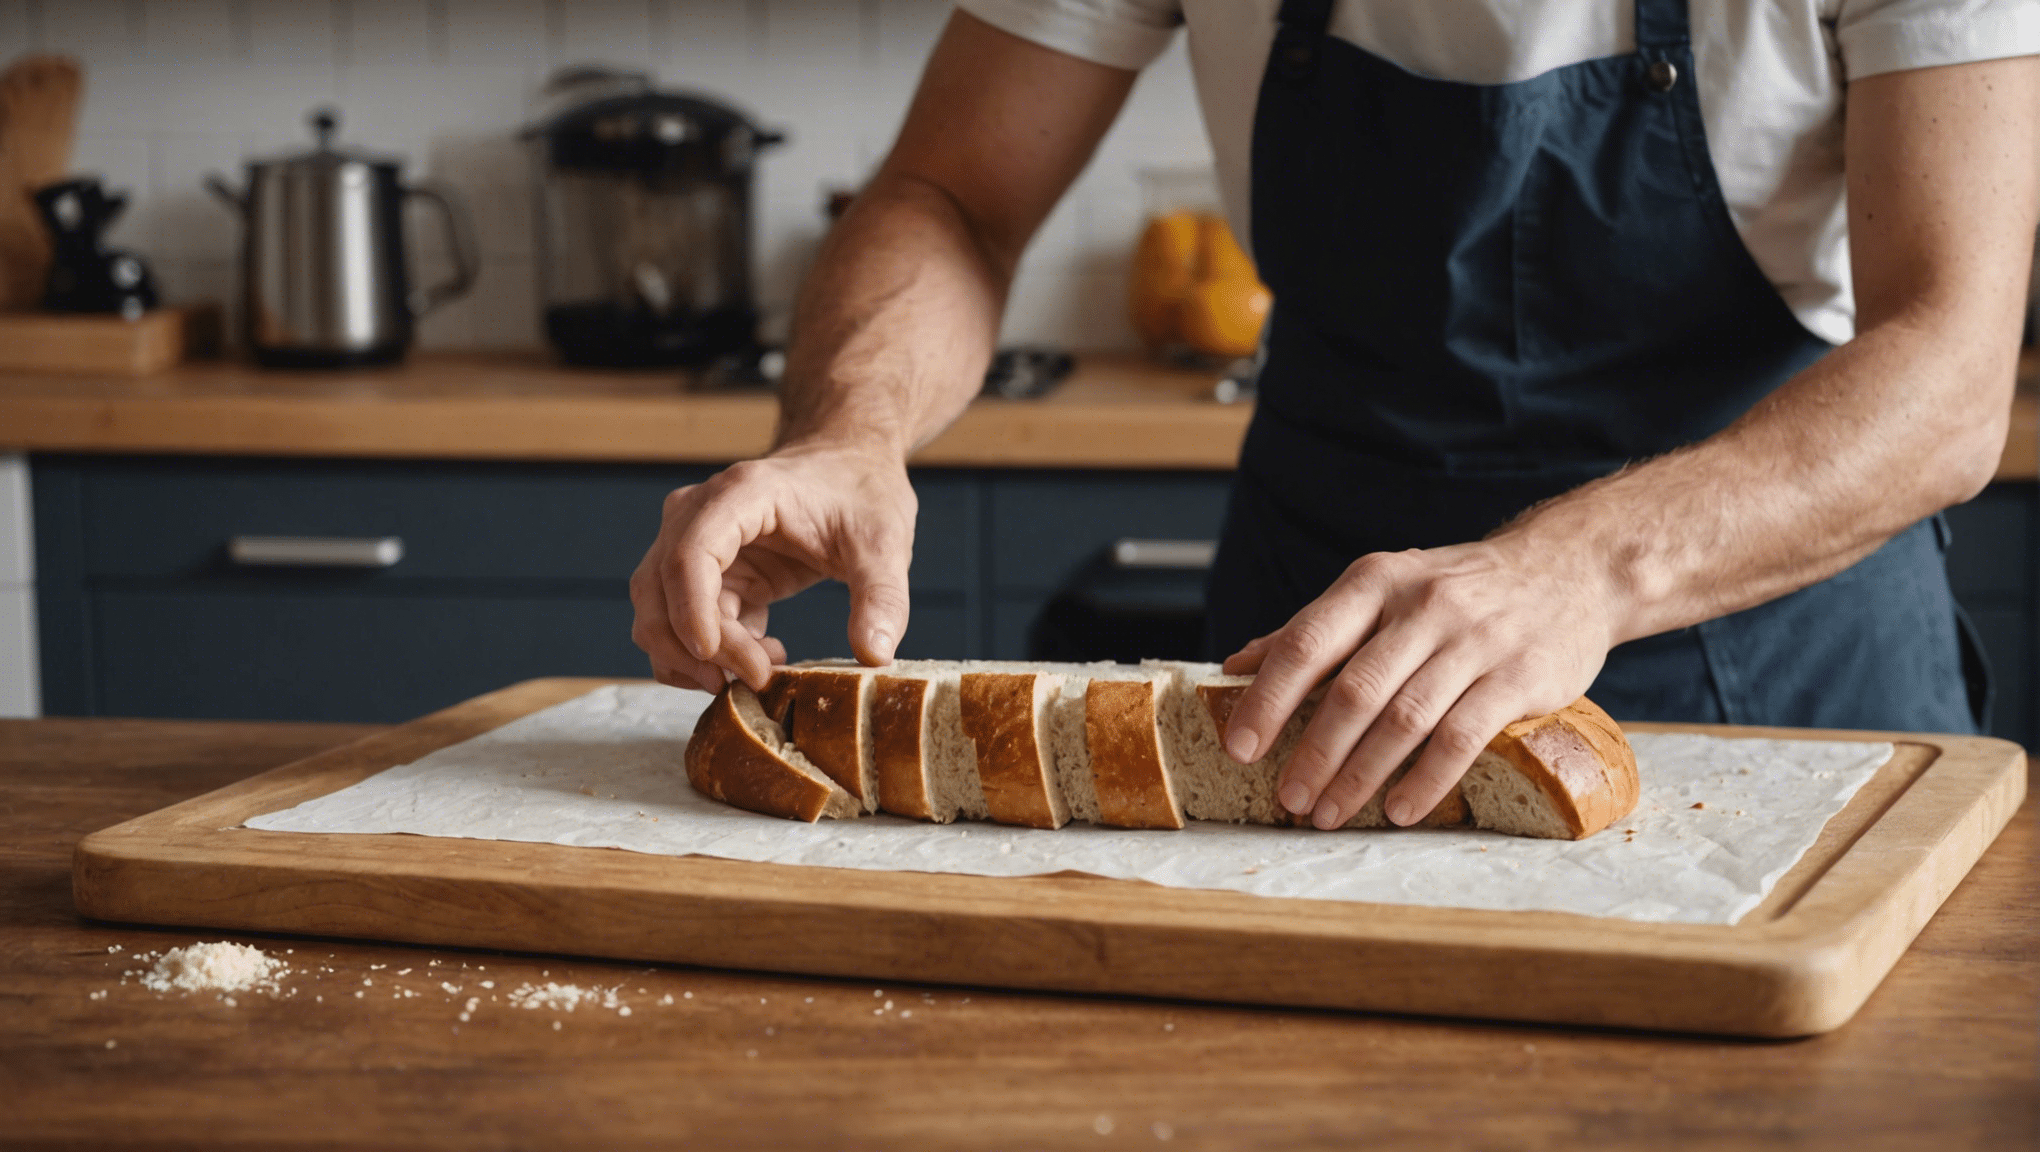 découvrez comment apprendre à faire son pain maison étape par étape avec nos précieux conseils et recettes faciles à réaliser.